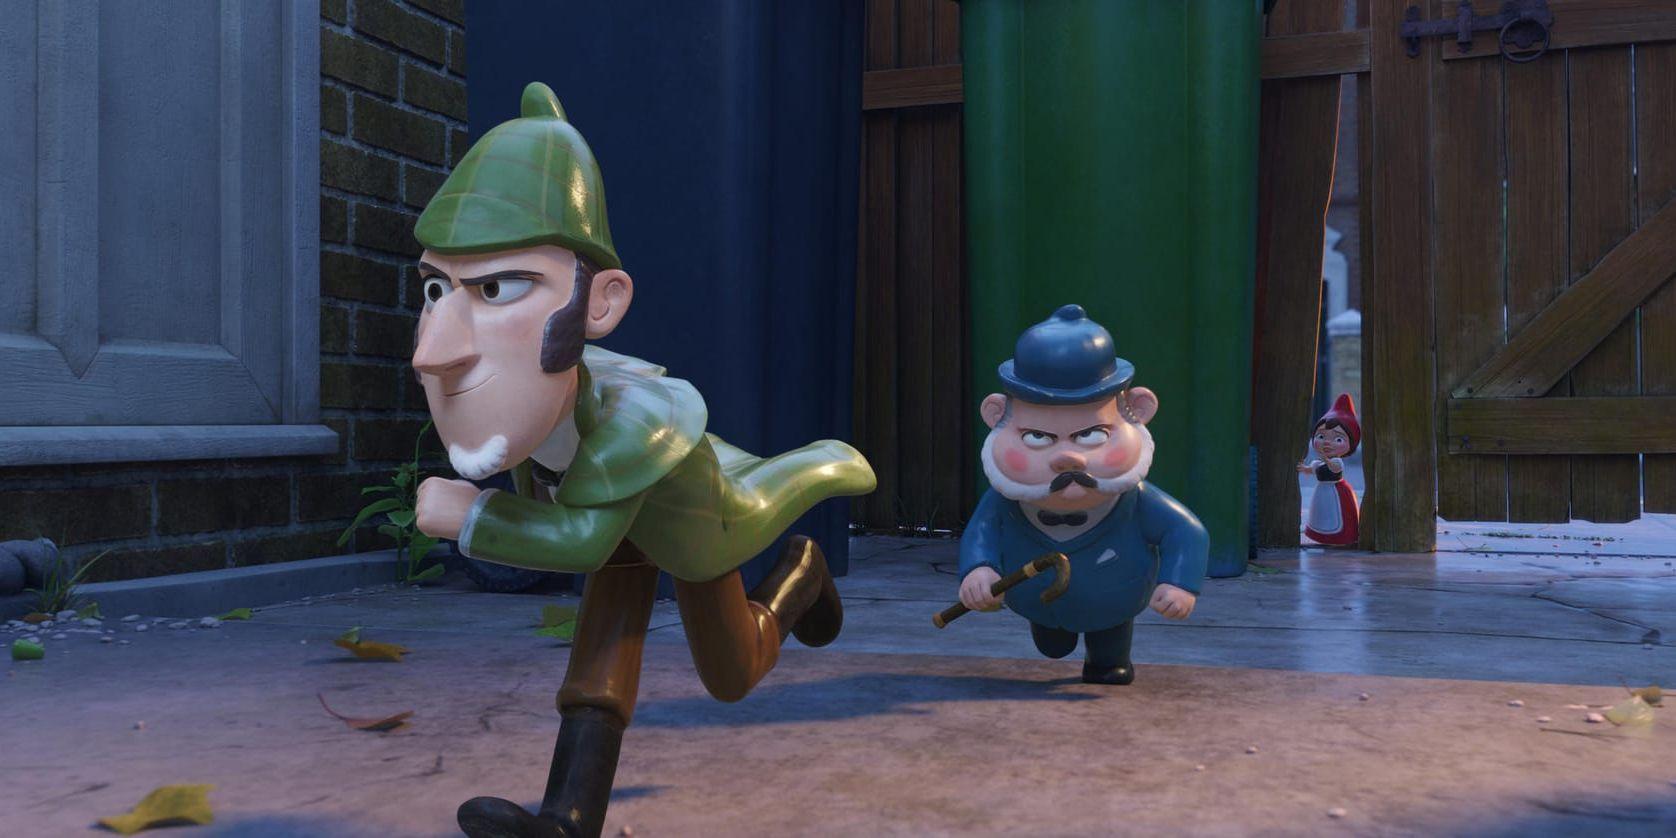 Den stingslige detektiven Sherlock Gnomes och hans hårt prövade partner Doktor Watson letar efter kidnappade trädgårdstomtar i ”Mästerdetektiven Sherlock Gnomes” - uppföljaren till ”Gnomeo och Julia”.